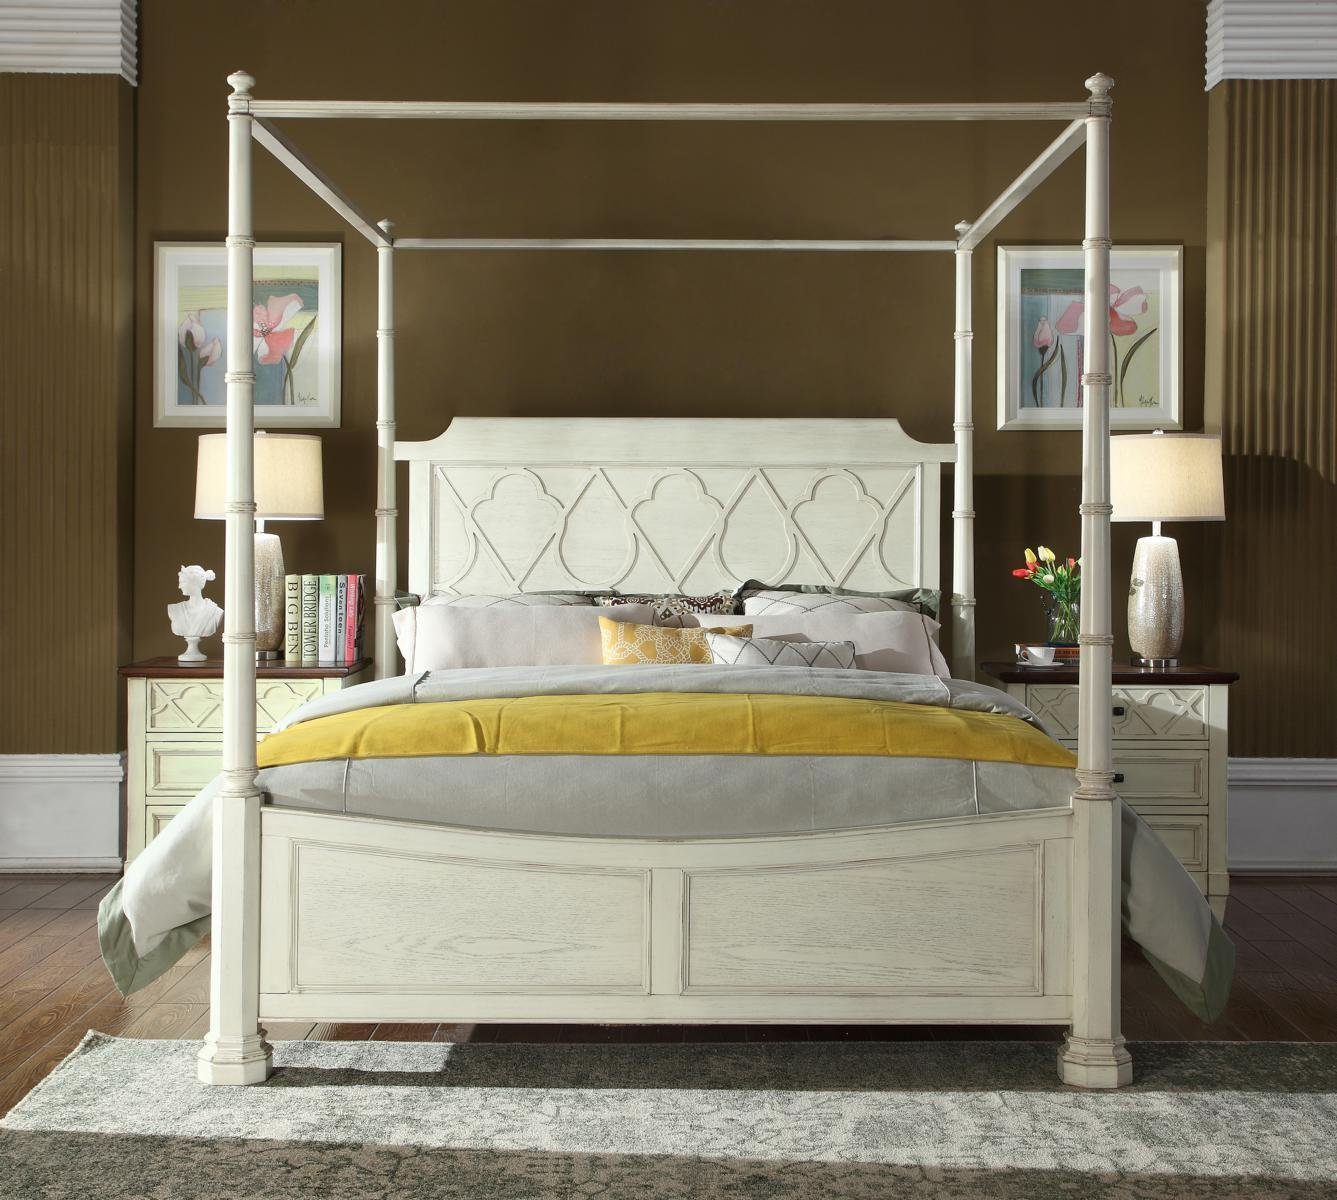 JVmoebel Bett, Himmelbett Echtes Holz Bett Design Luxus Betten Klassische  Schlfzimmer